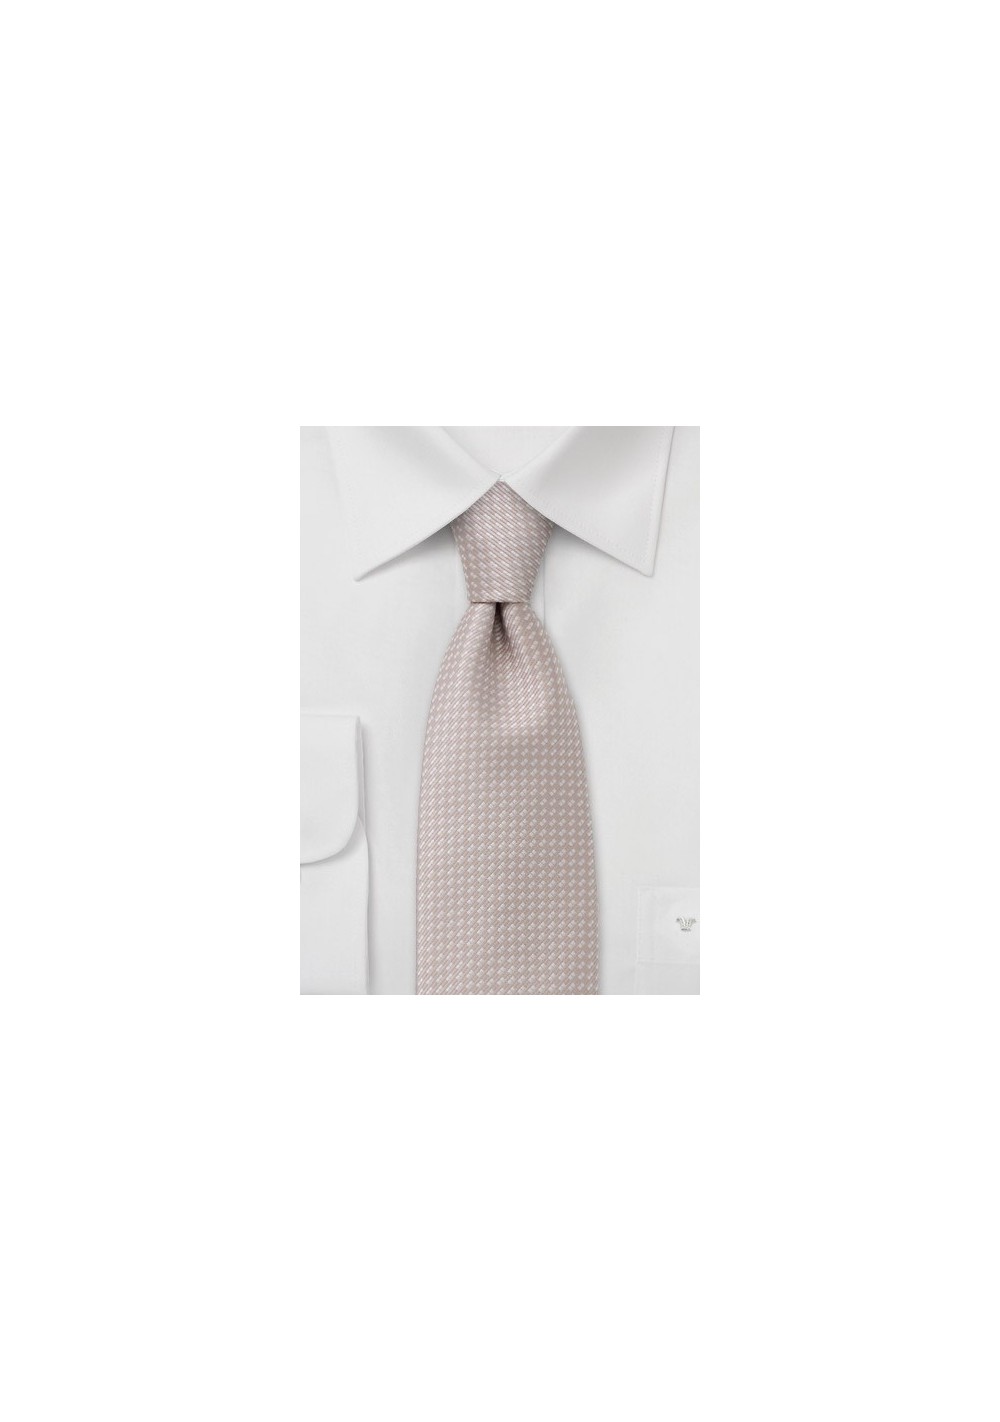 Peach orange necktie  -  Peach colored tie with fine pattern